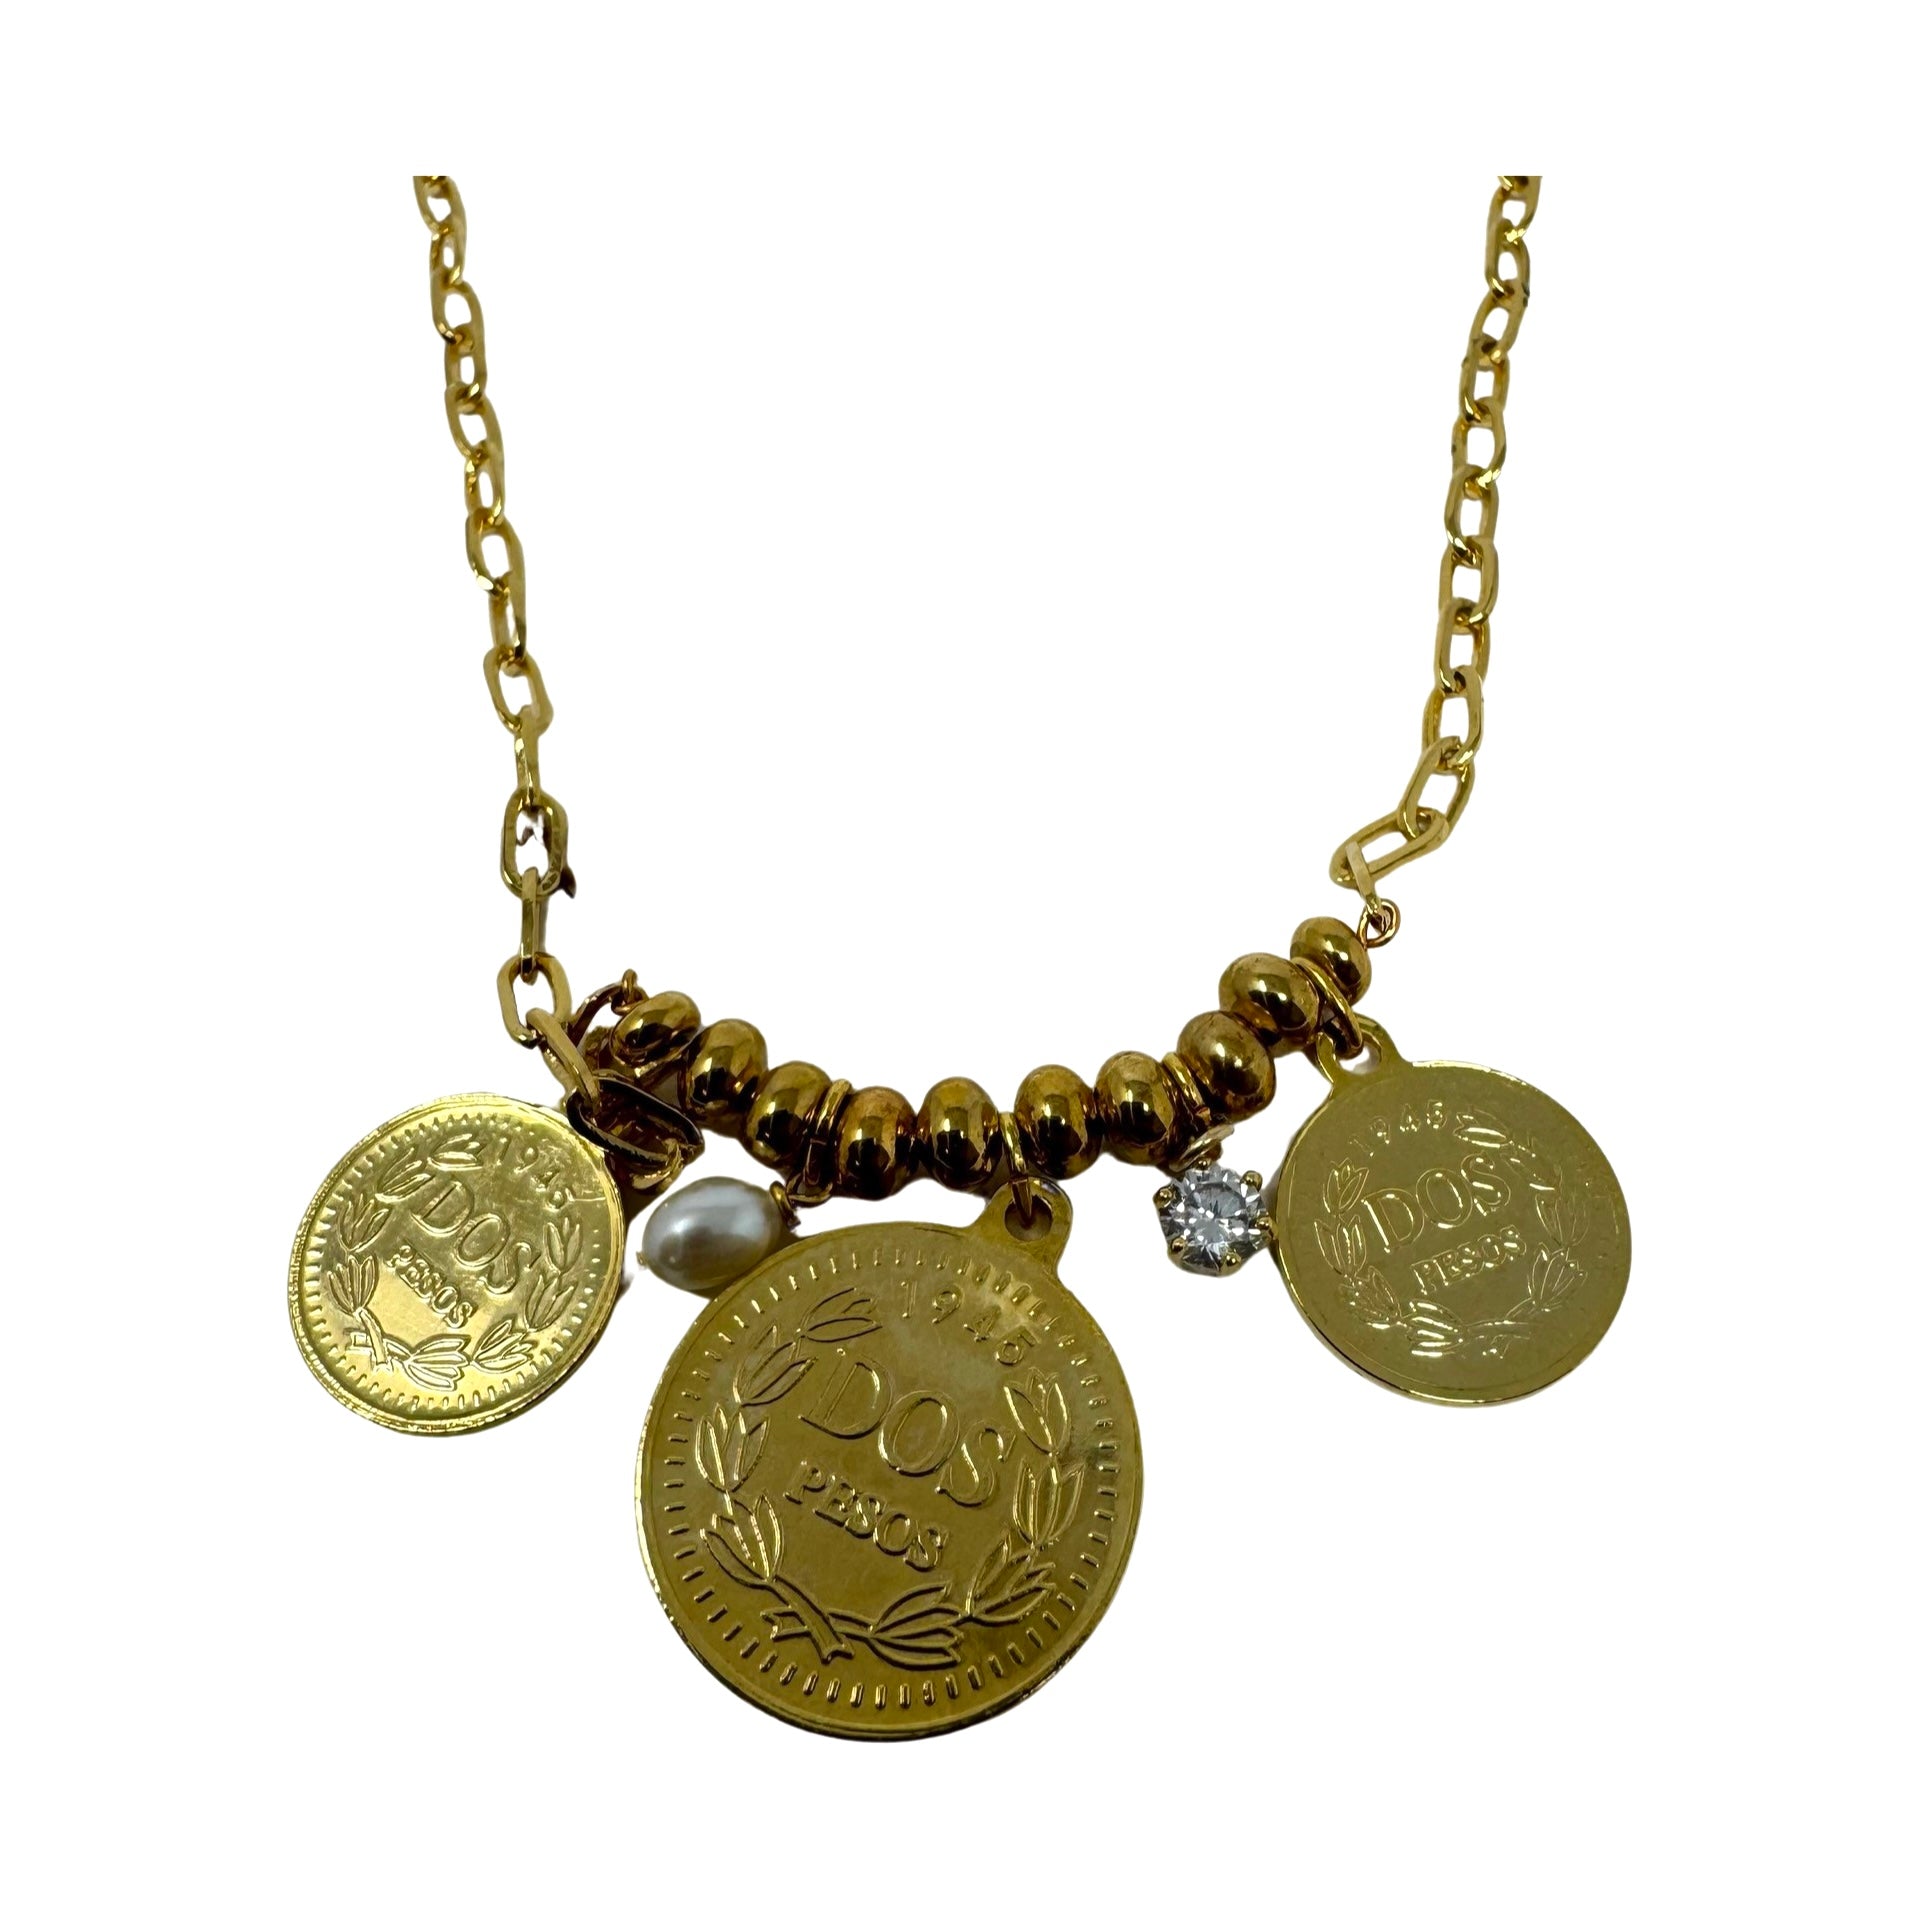 Dos Pesos Coin Pendant Necklace